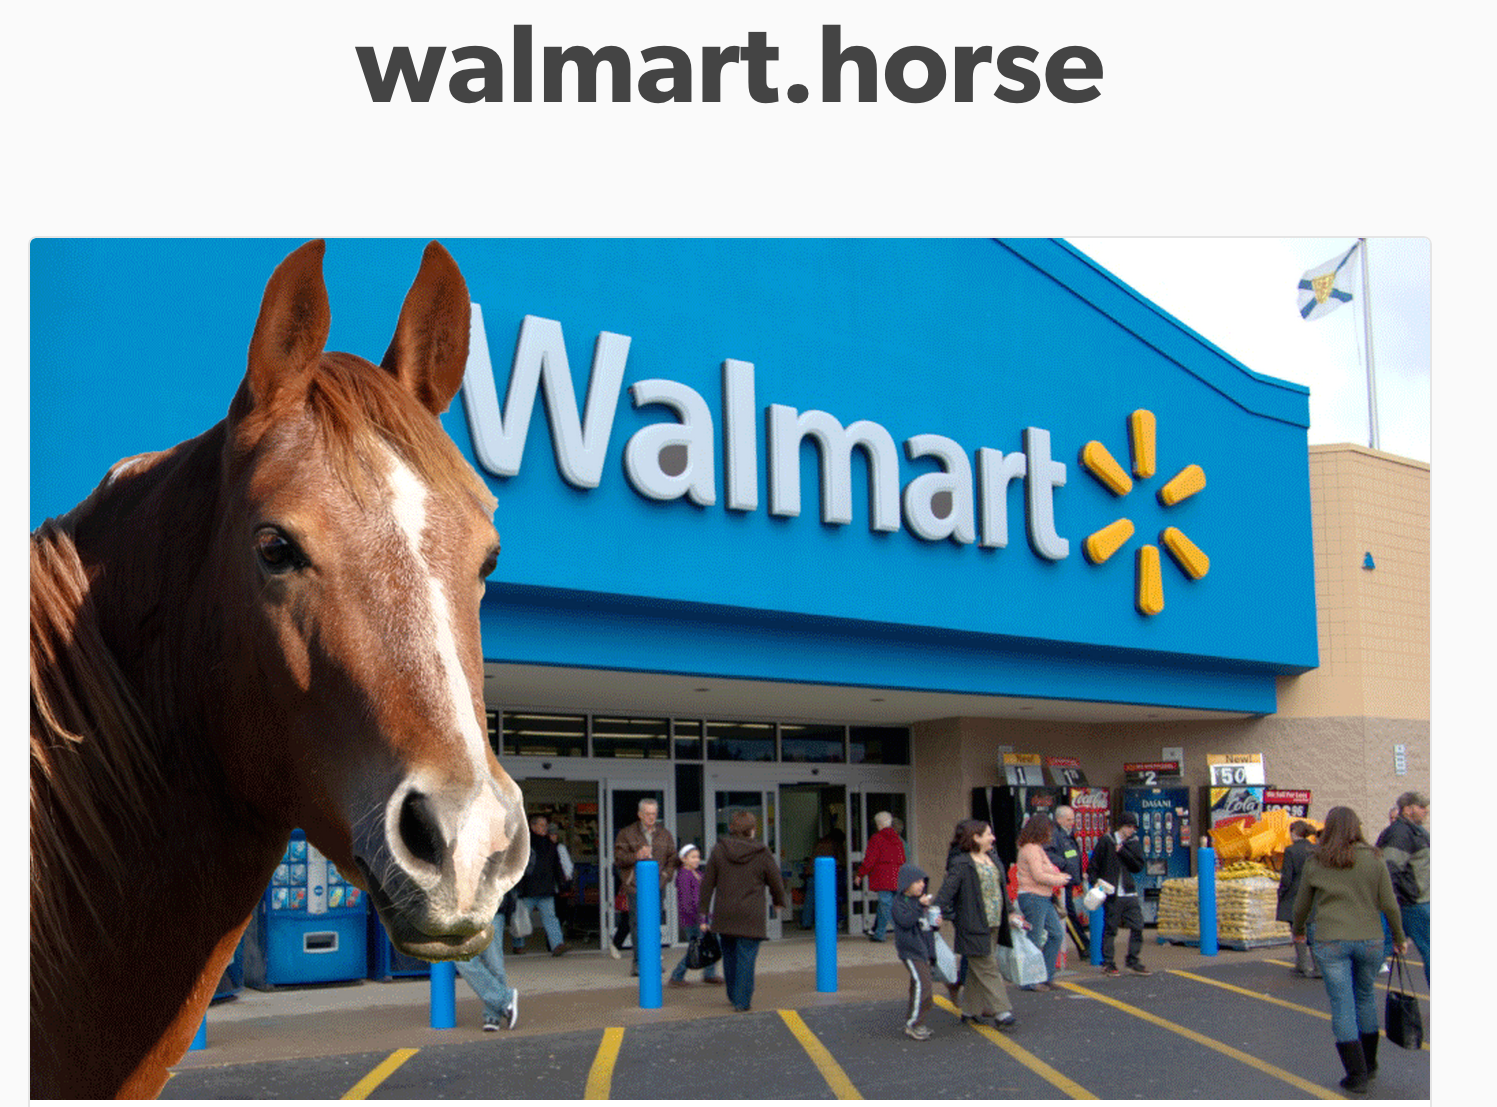 Walmart Displeased With Walmart.Horse, Wants It Taken Down